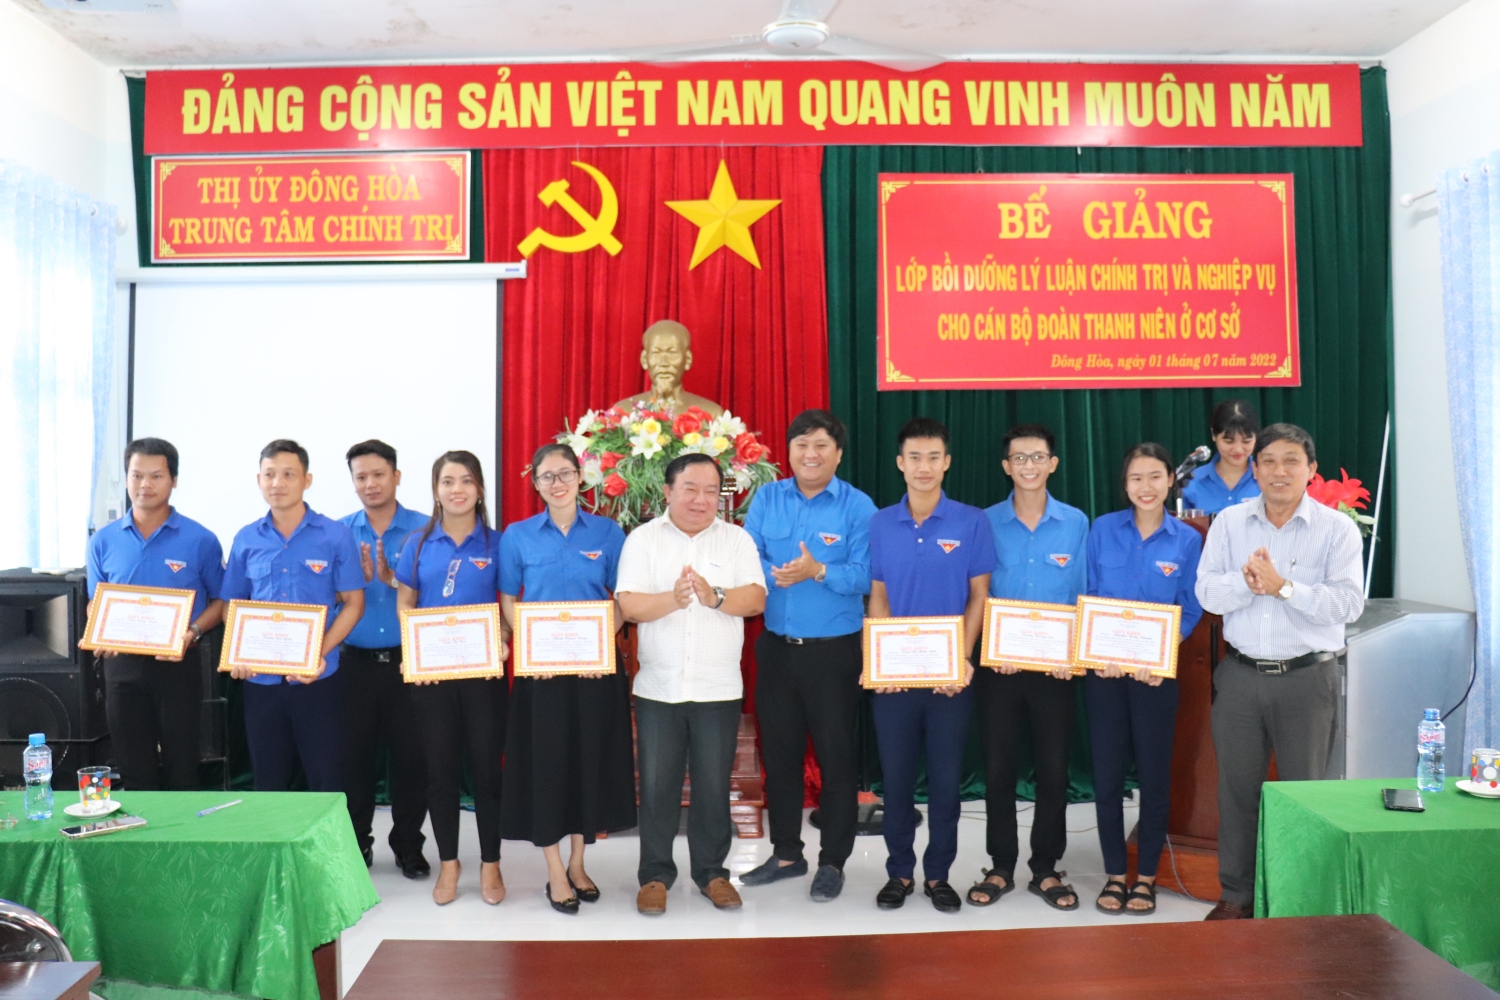 Thị Đoàn và Trung tâm chính trị Thị xã trao giấy khen cho các học viên xuất sắc.